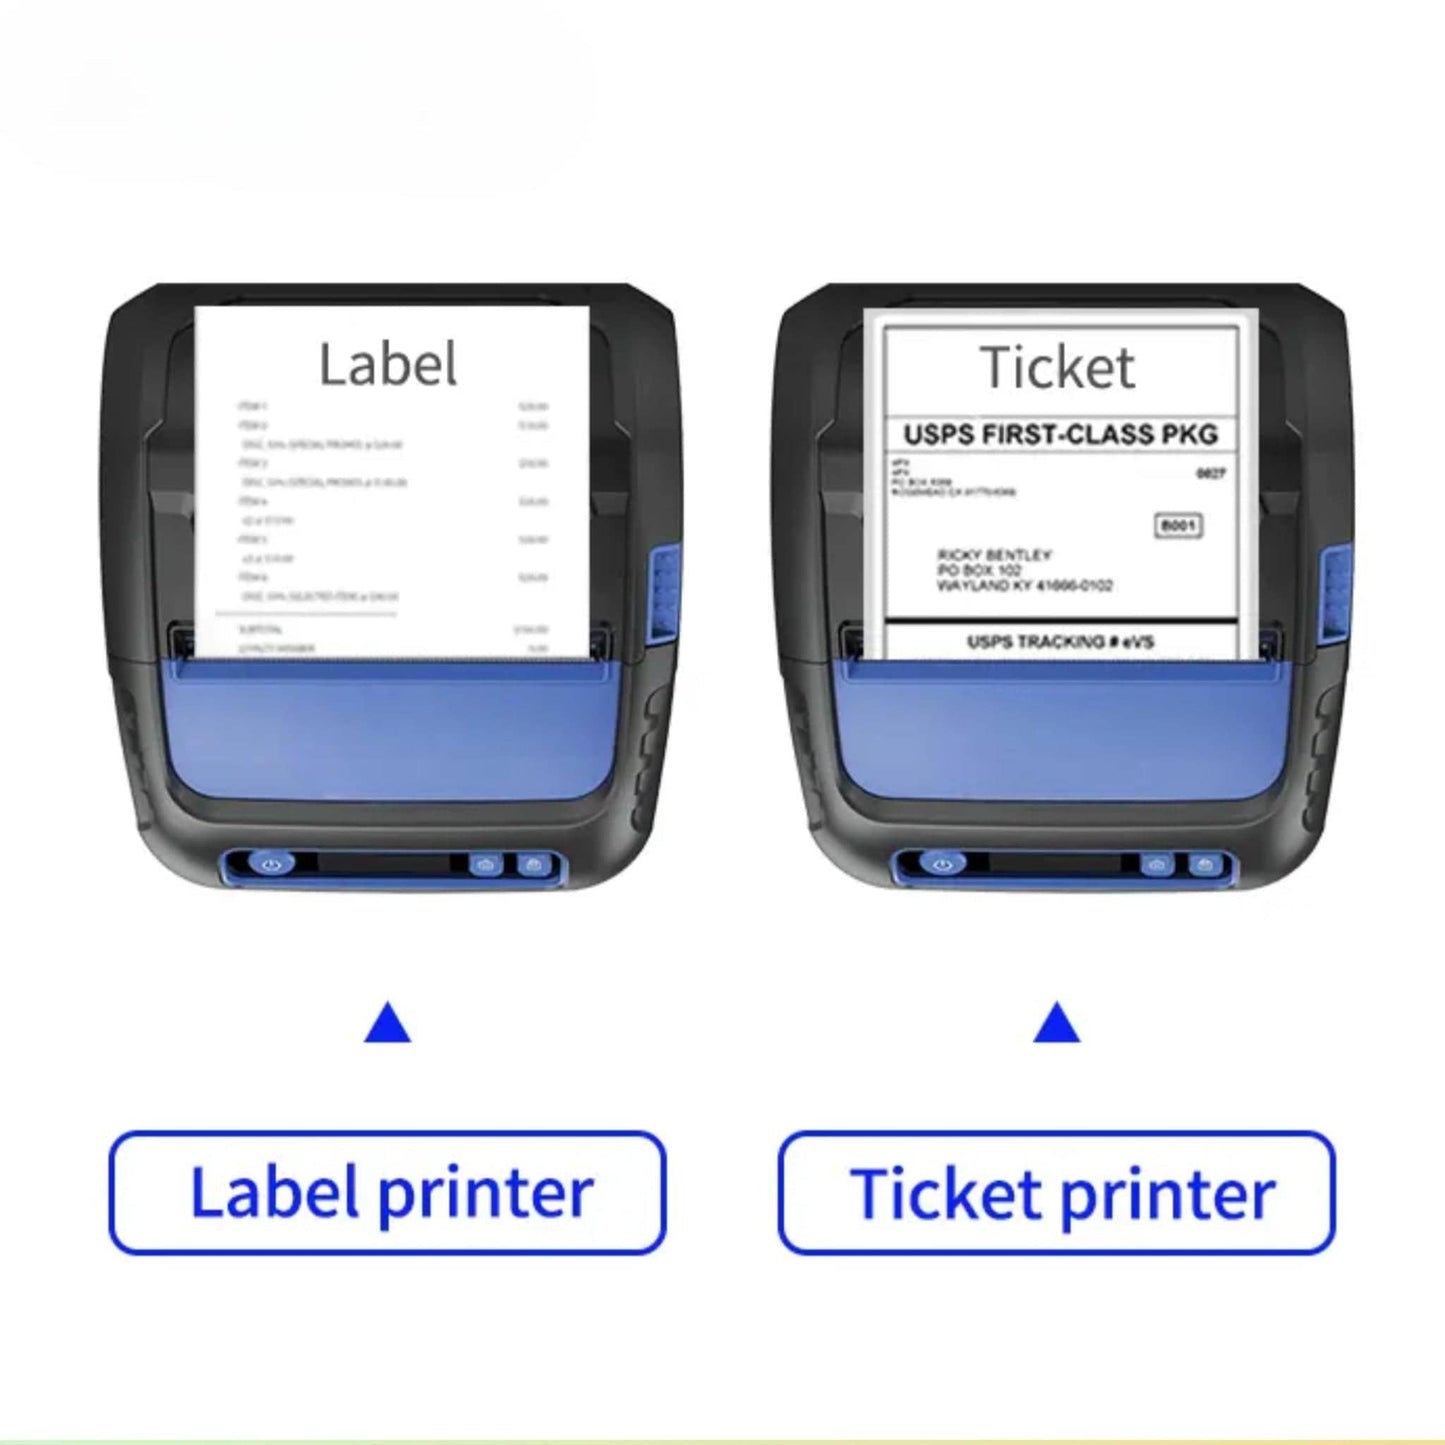 Mobile Printers - Postech PT-R8001-01 - Neotech